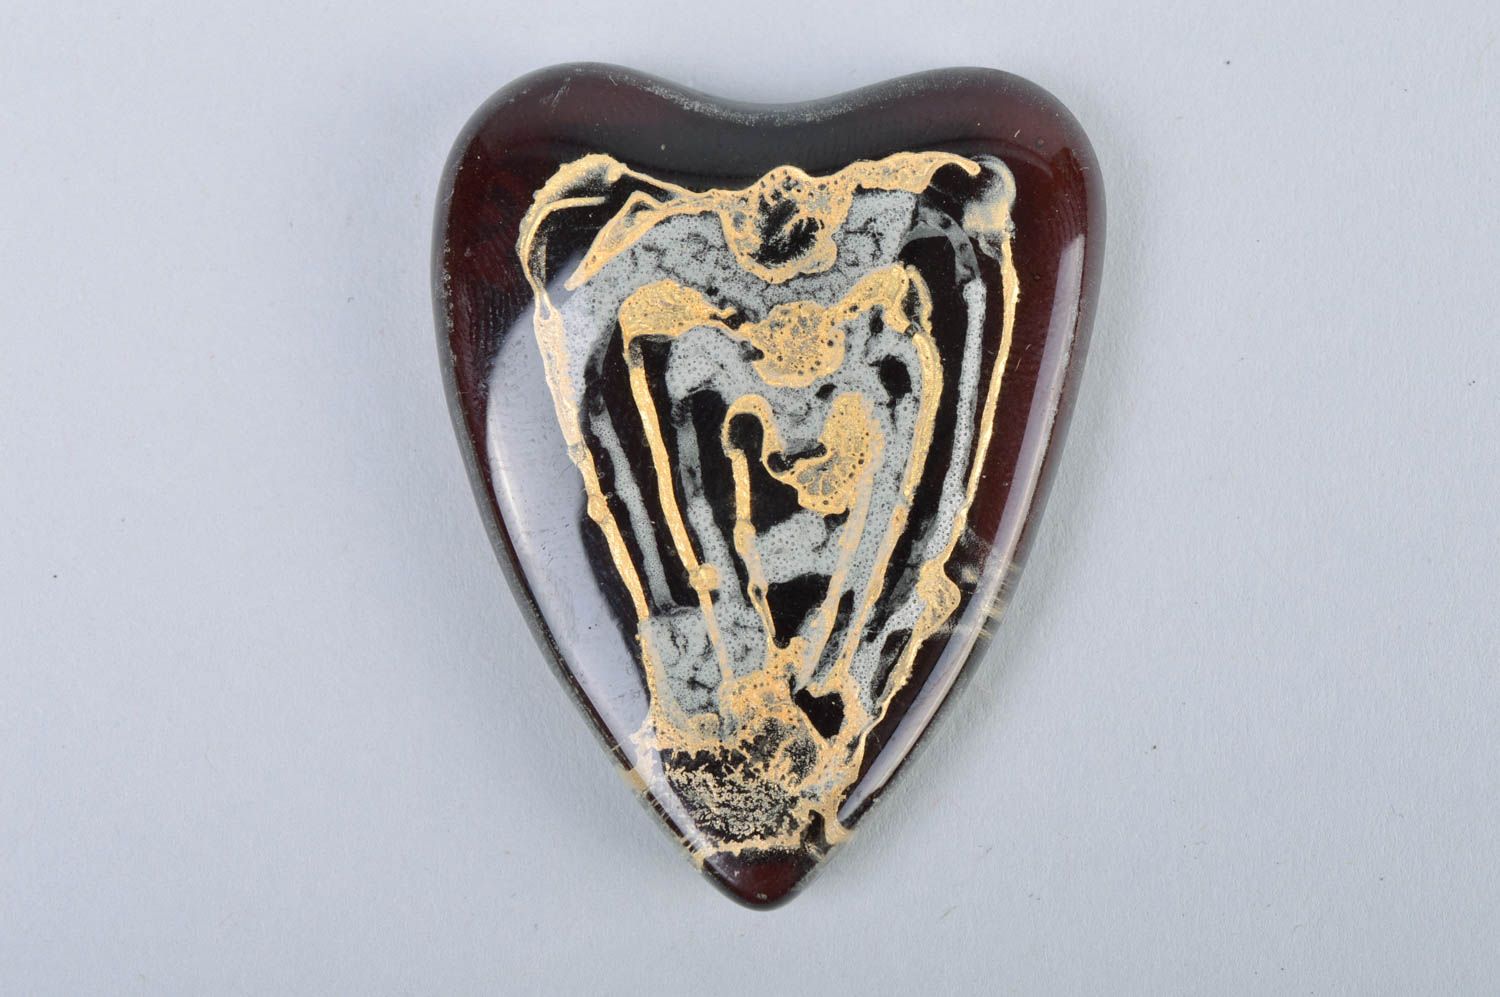 Handmade dark heart shaped designer fused glass fridge magnet for interior decor photo 2